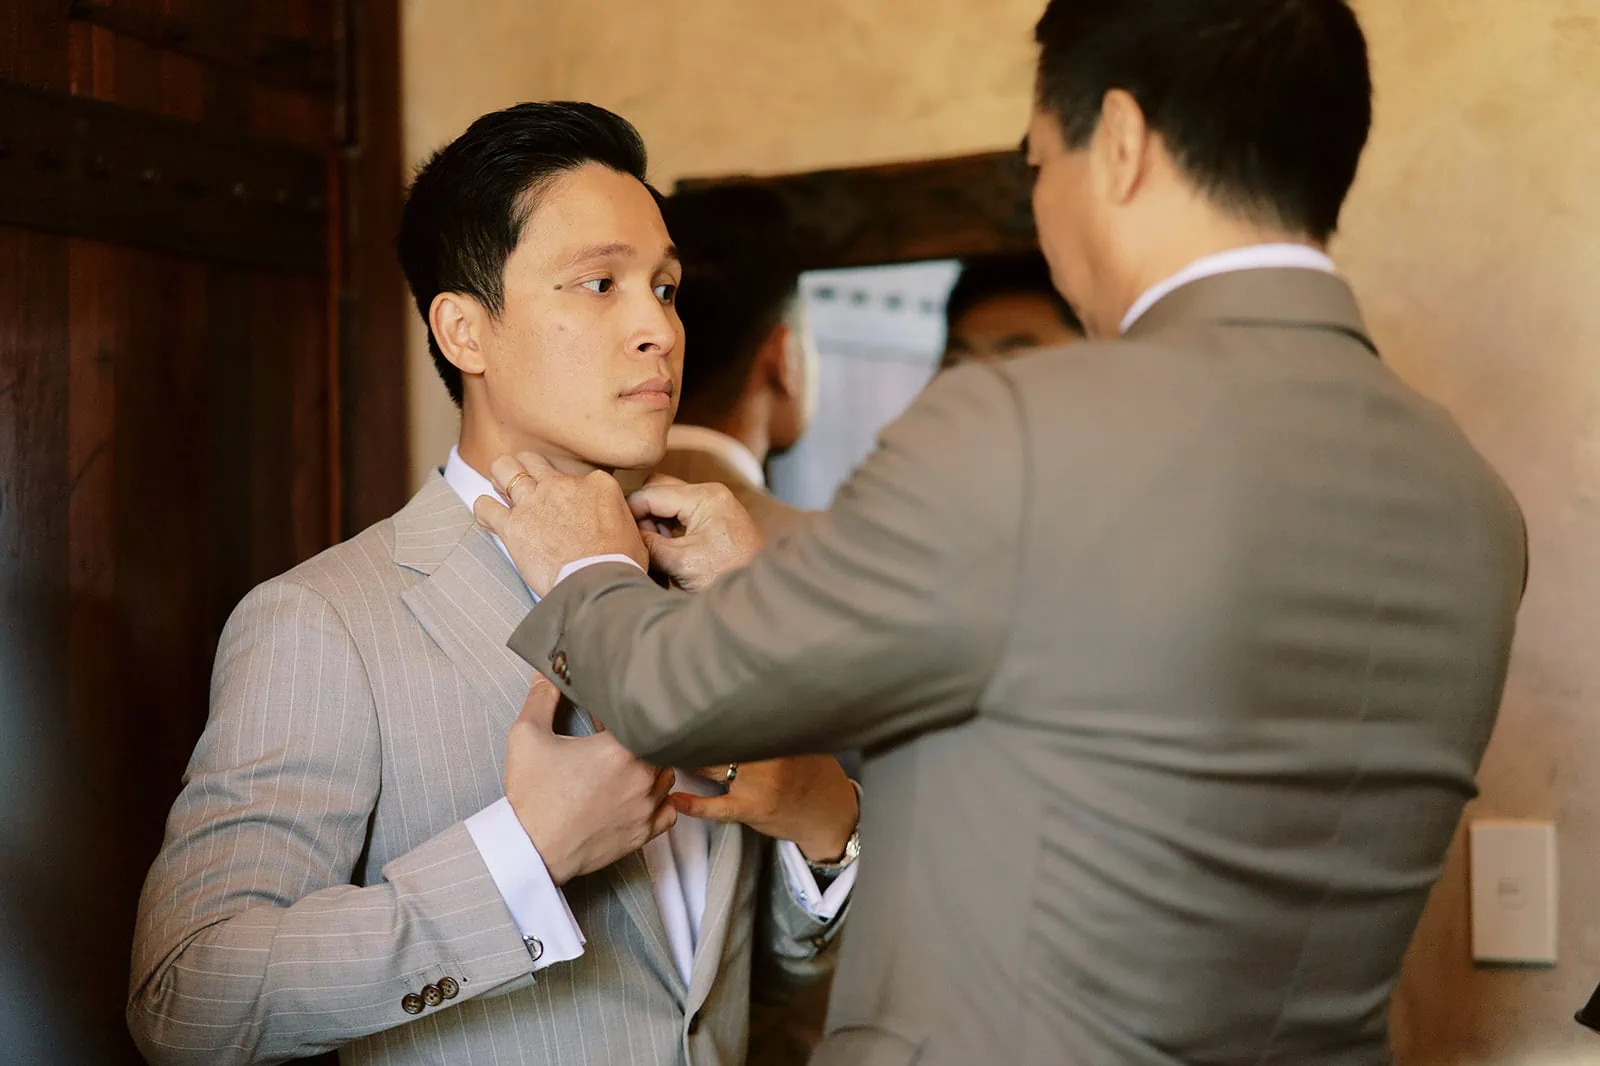 Queenstown Elopement Heli Wedding Photographer クイーンズタウン結婚式 | Tobi, dressed in a suit, is adjusting his tie.